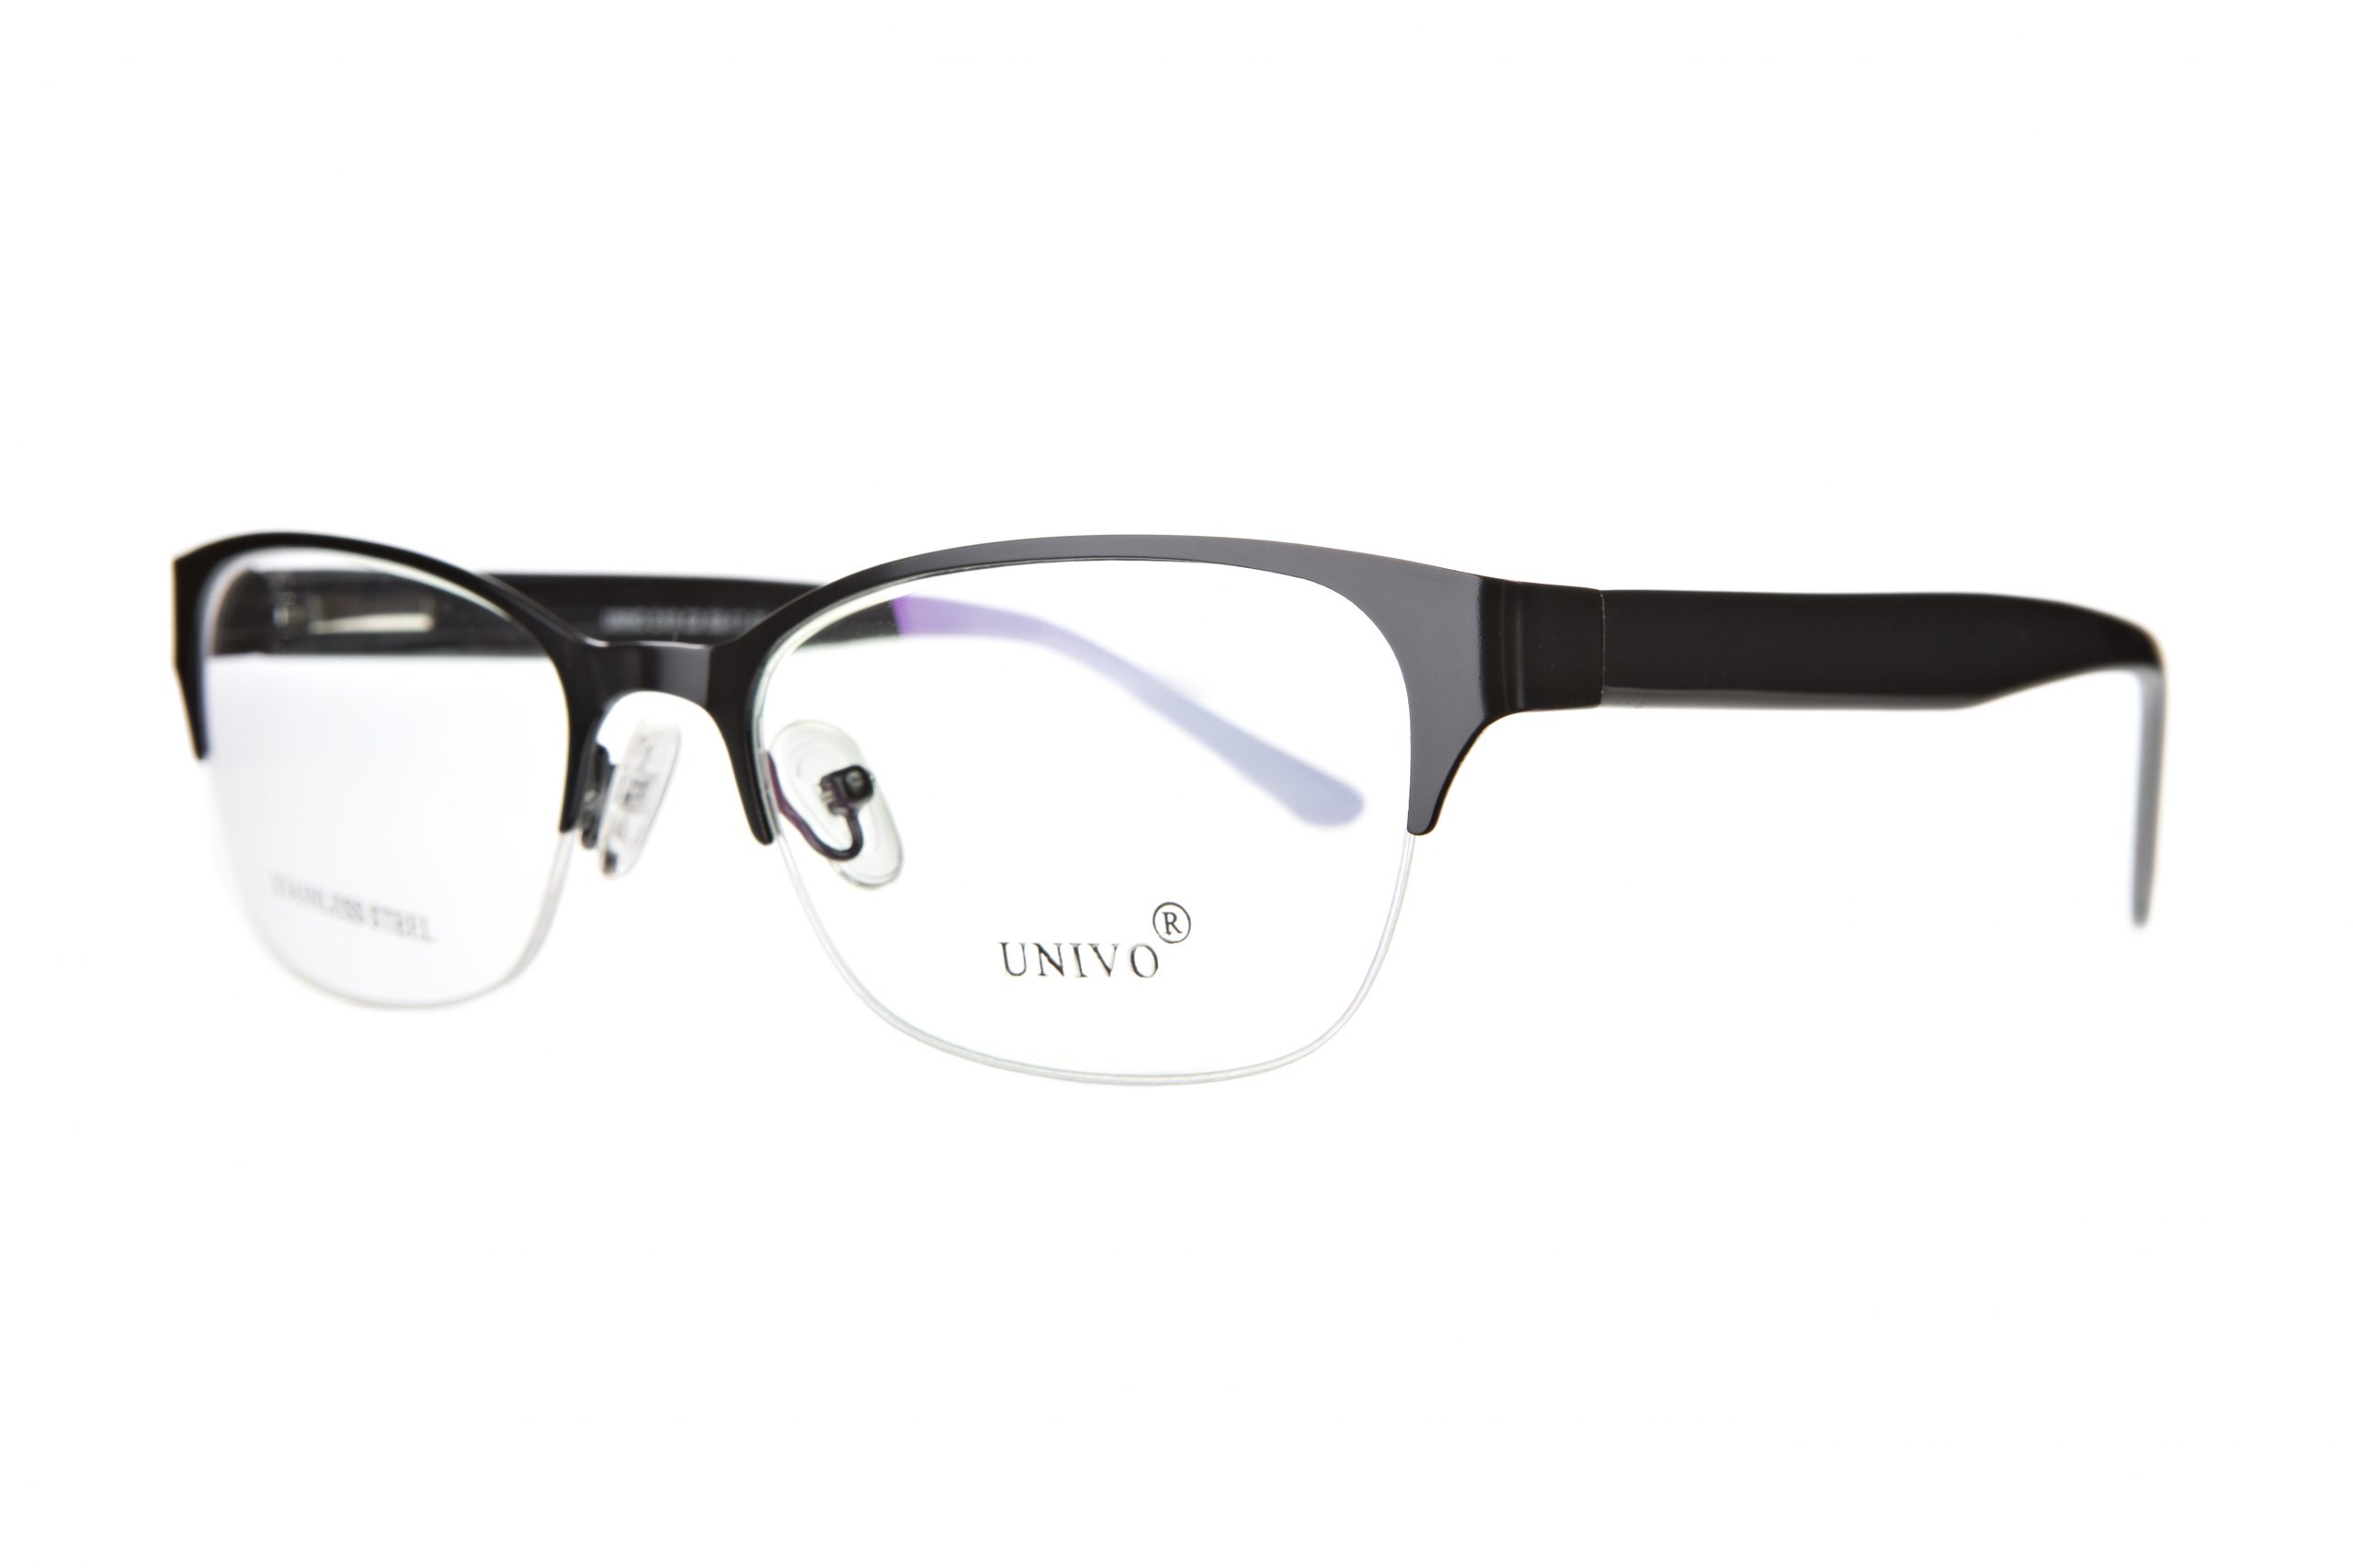 Univo 518 - Glasses Complete